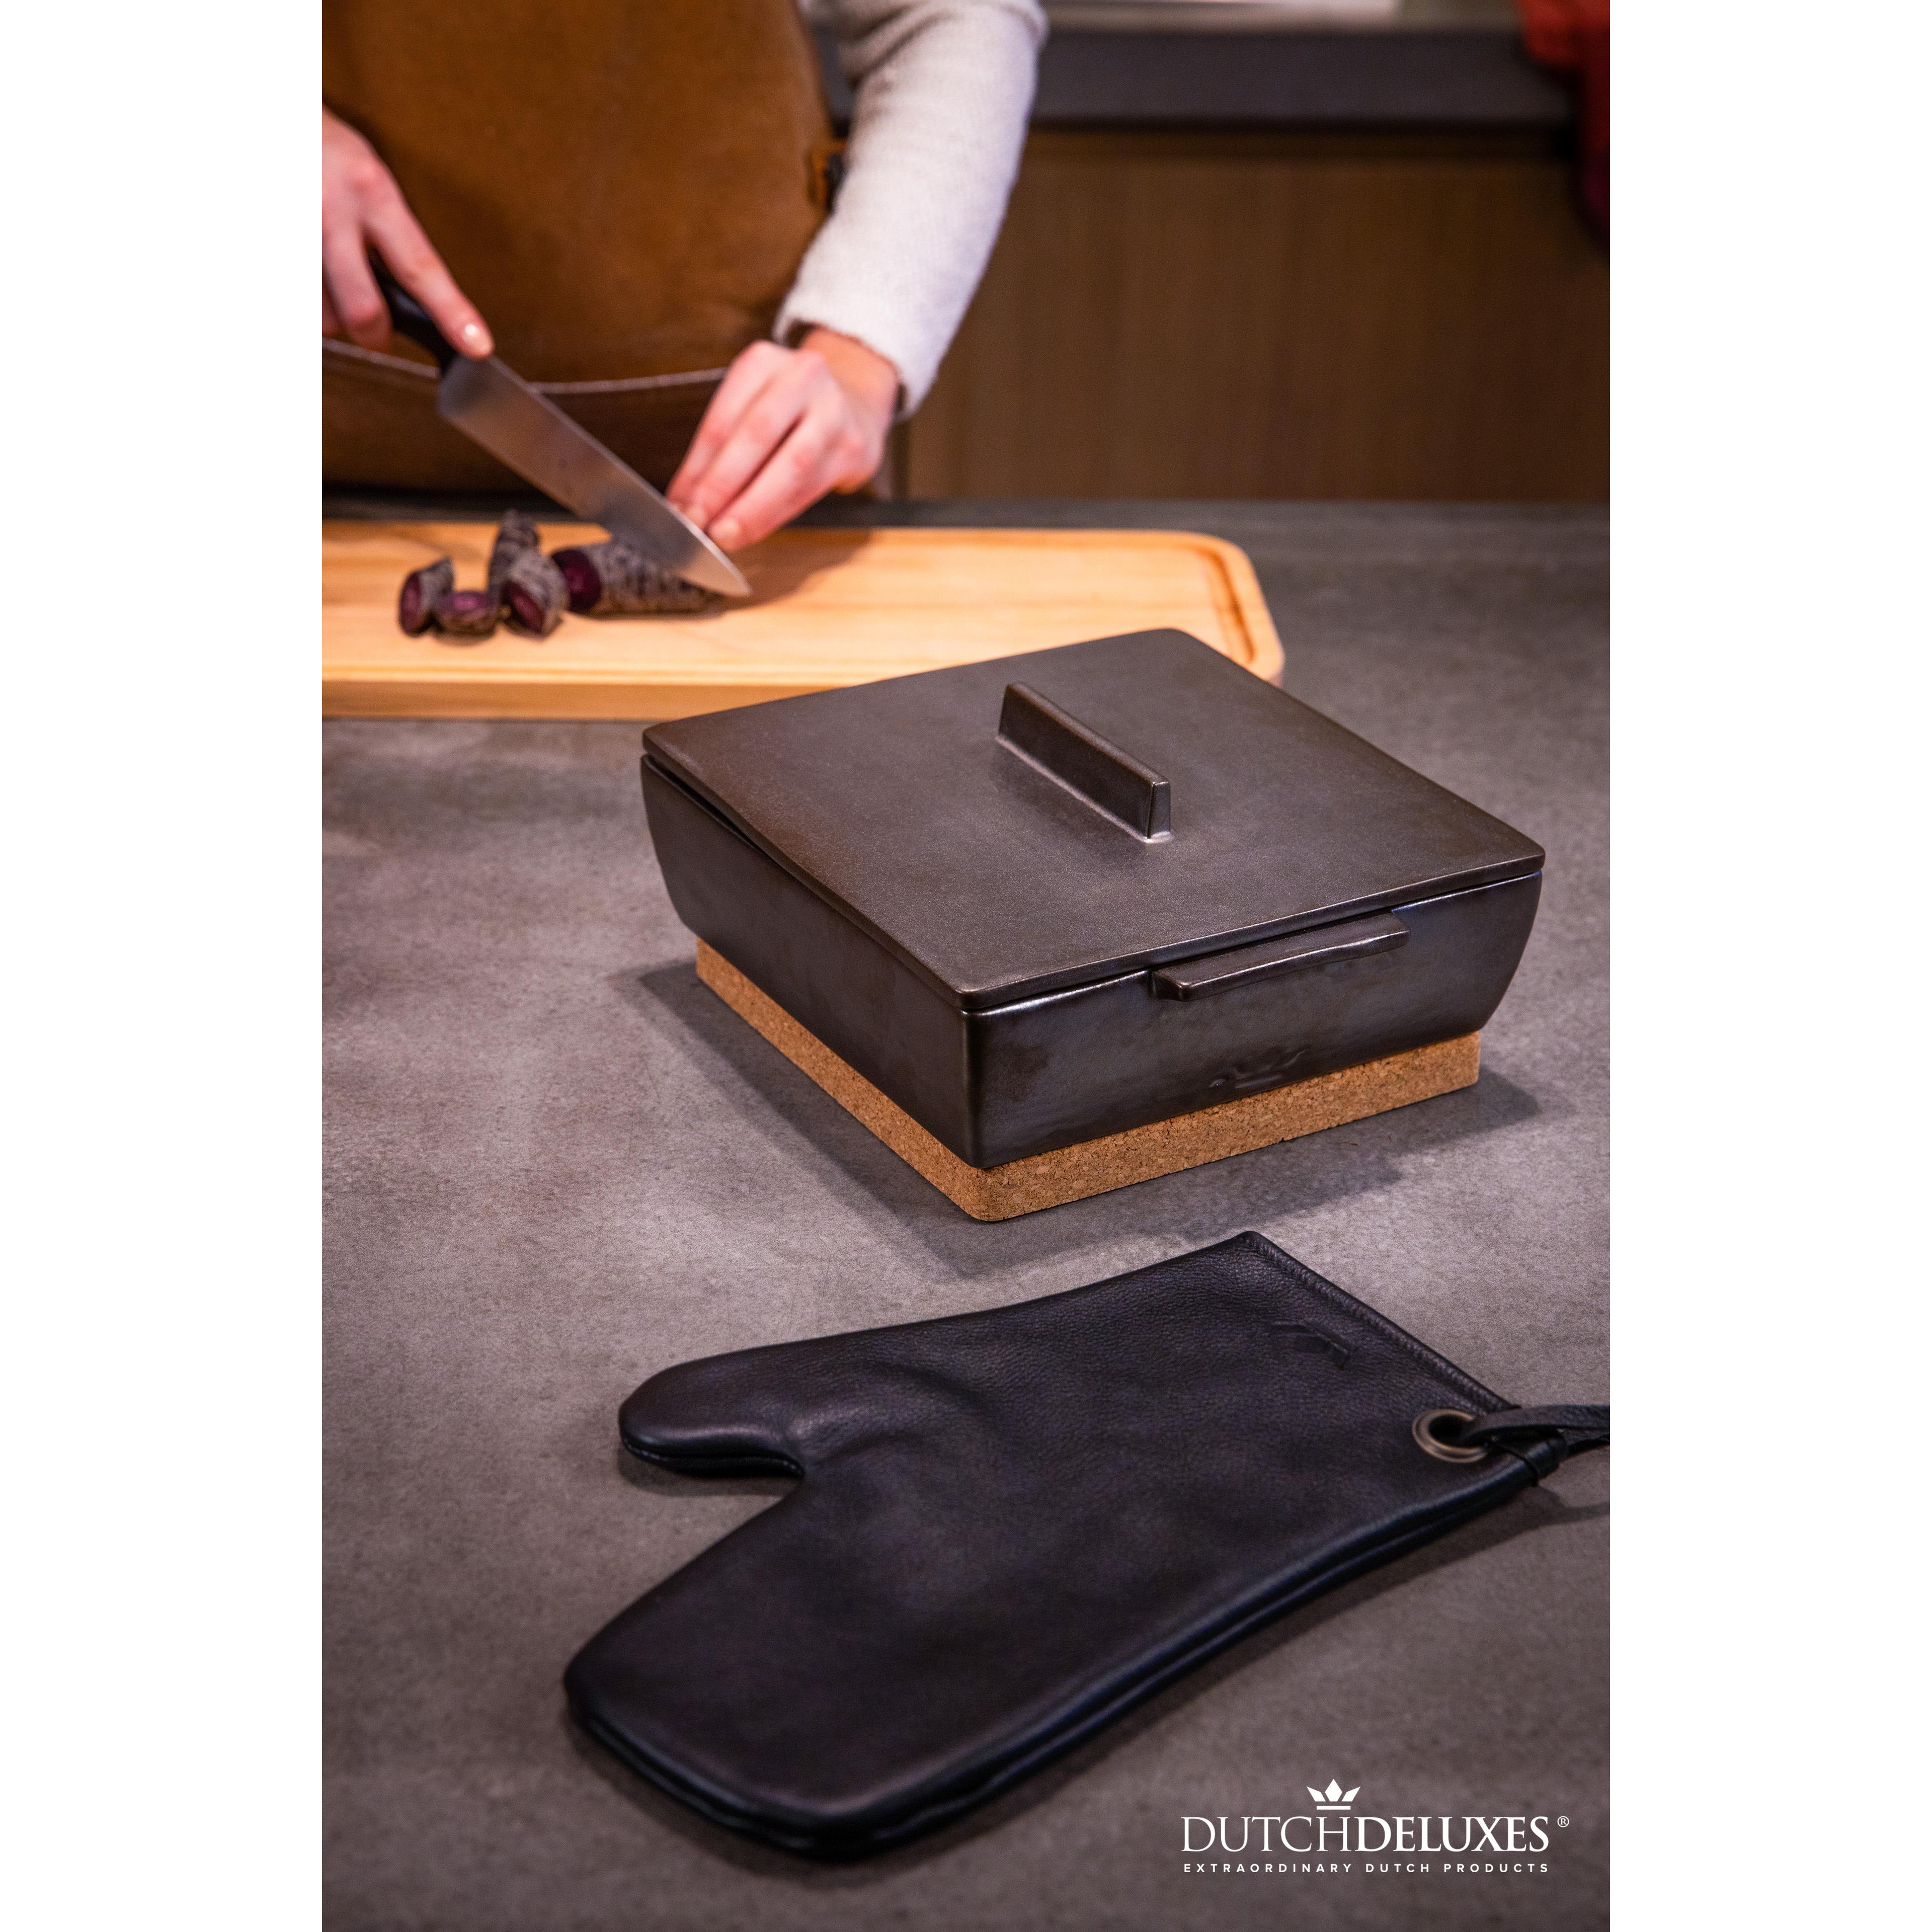 Dutchdeluxes Pot handske klassisk læder, sort